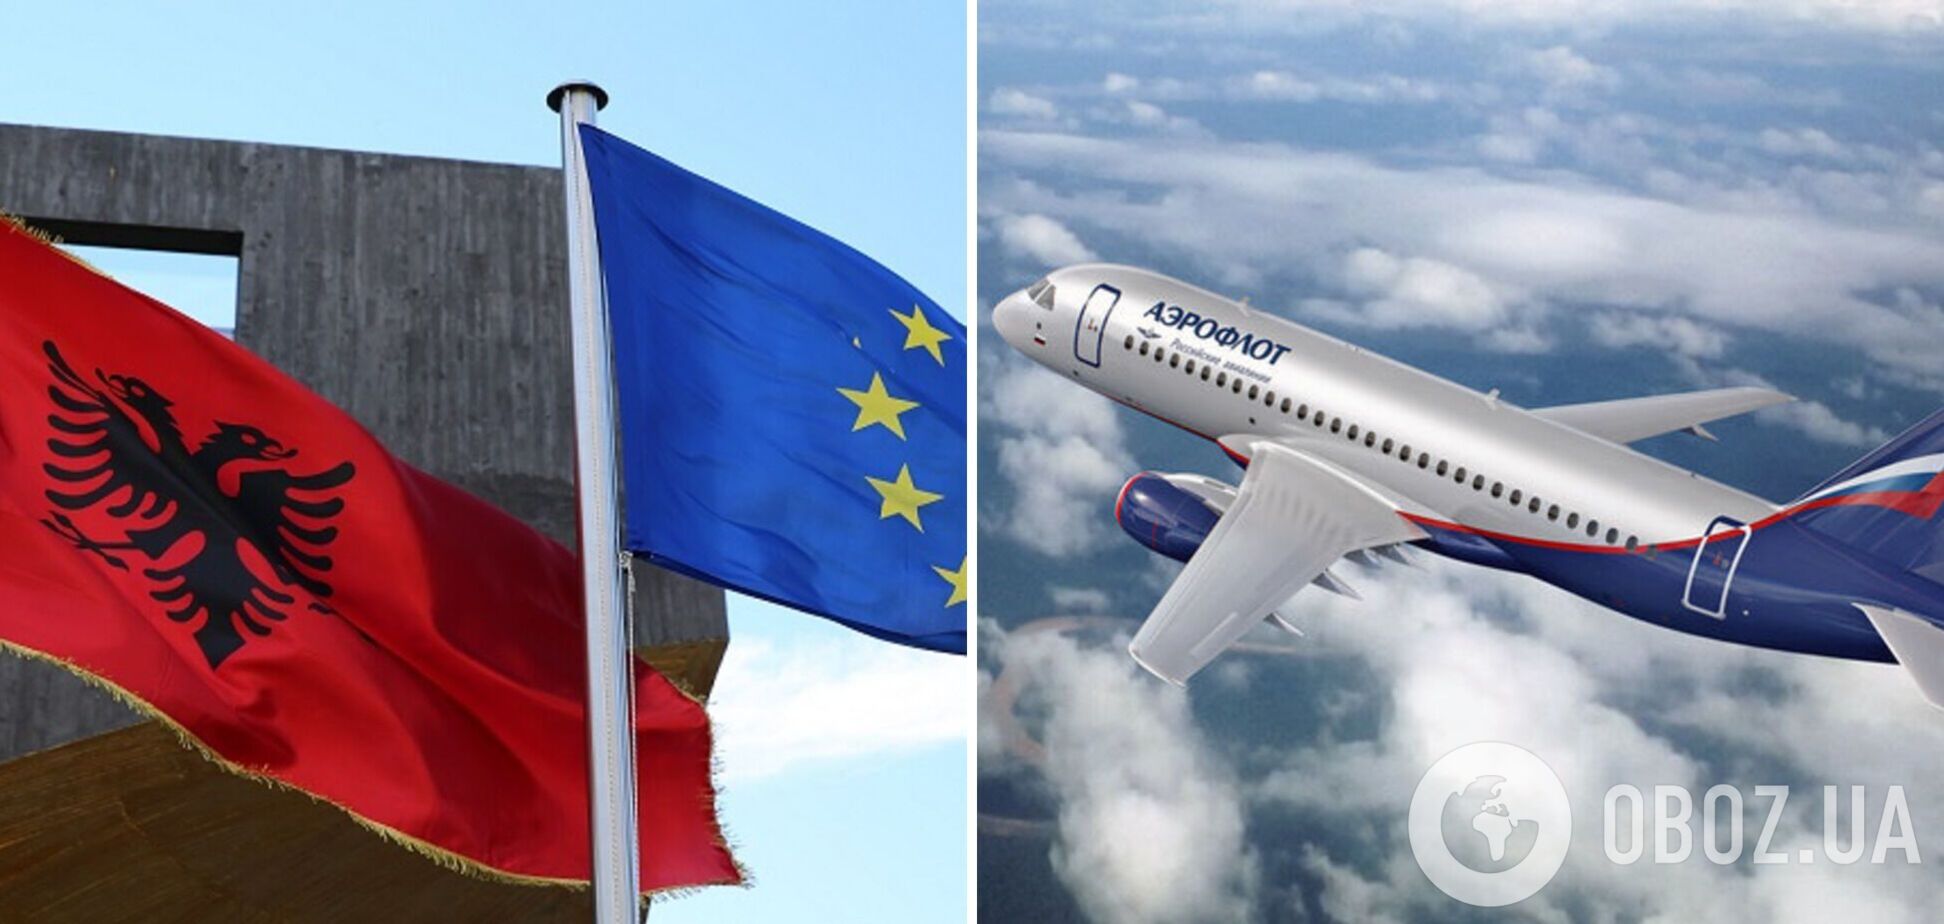 Кипр и Албания закрыли авиасообщение с РФ